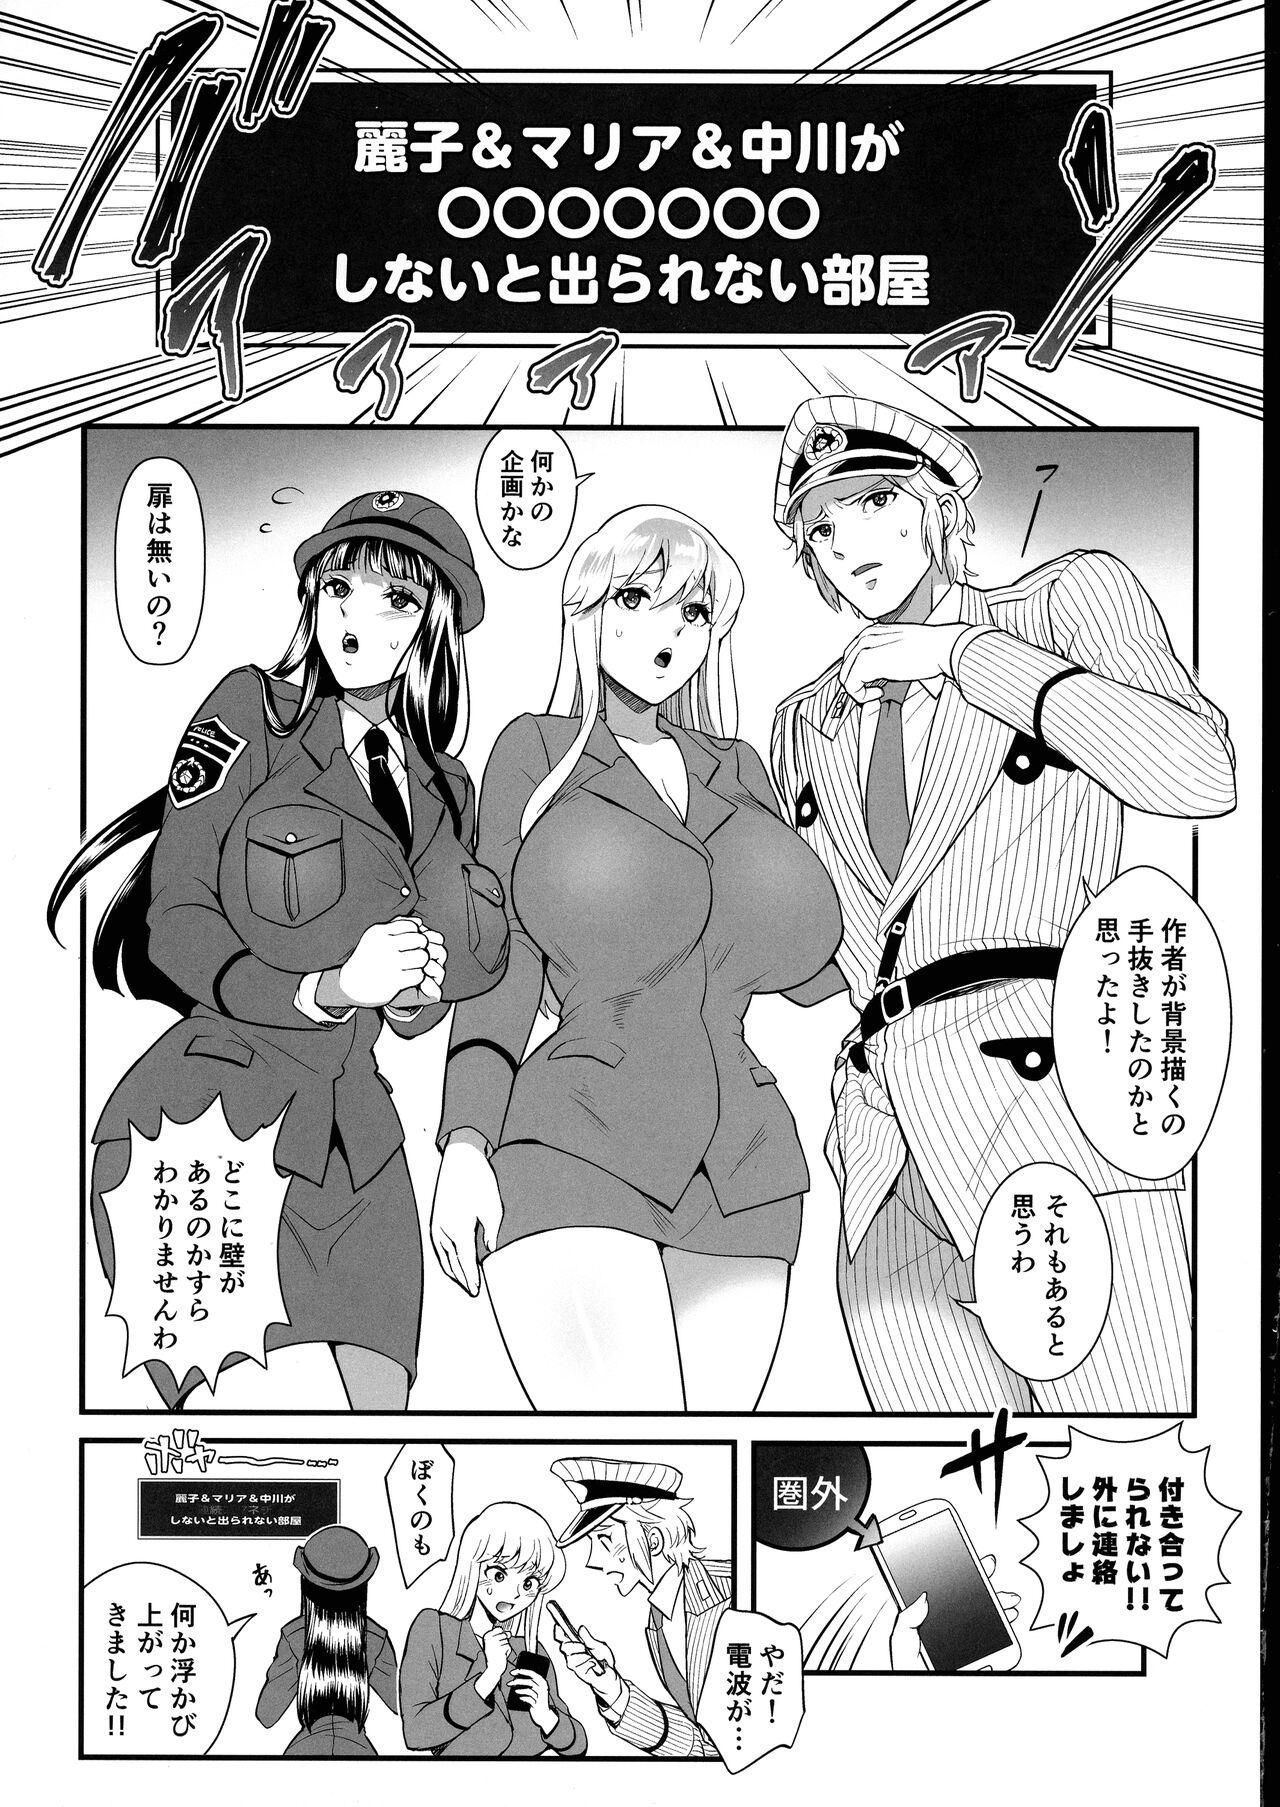 Lezdom Reiko & Maria & Nakagawa ga Ogeretsuna Koto o Shinai to derarenai Heya no Maki - Kochikame Negra - Page 4